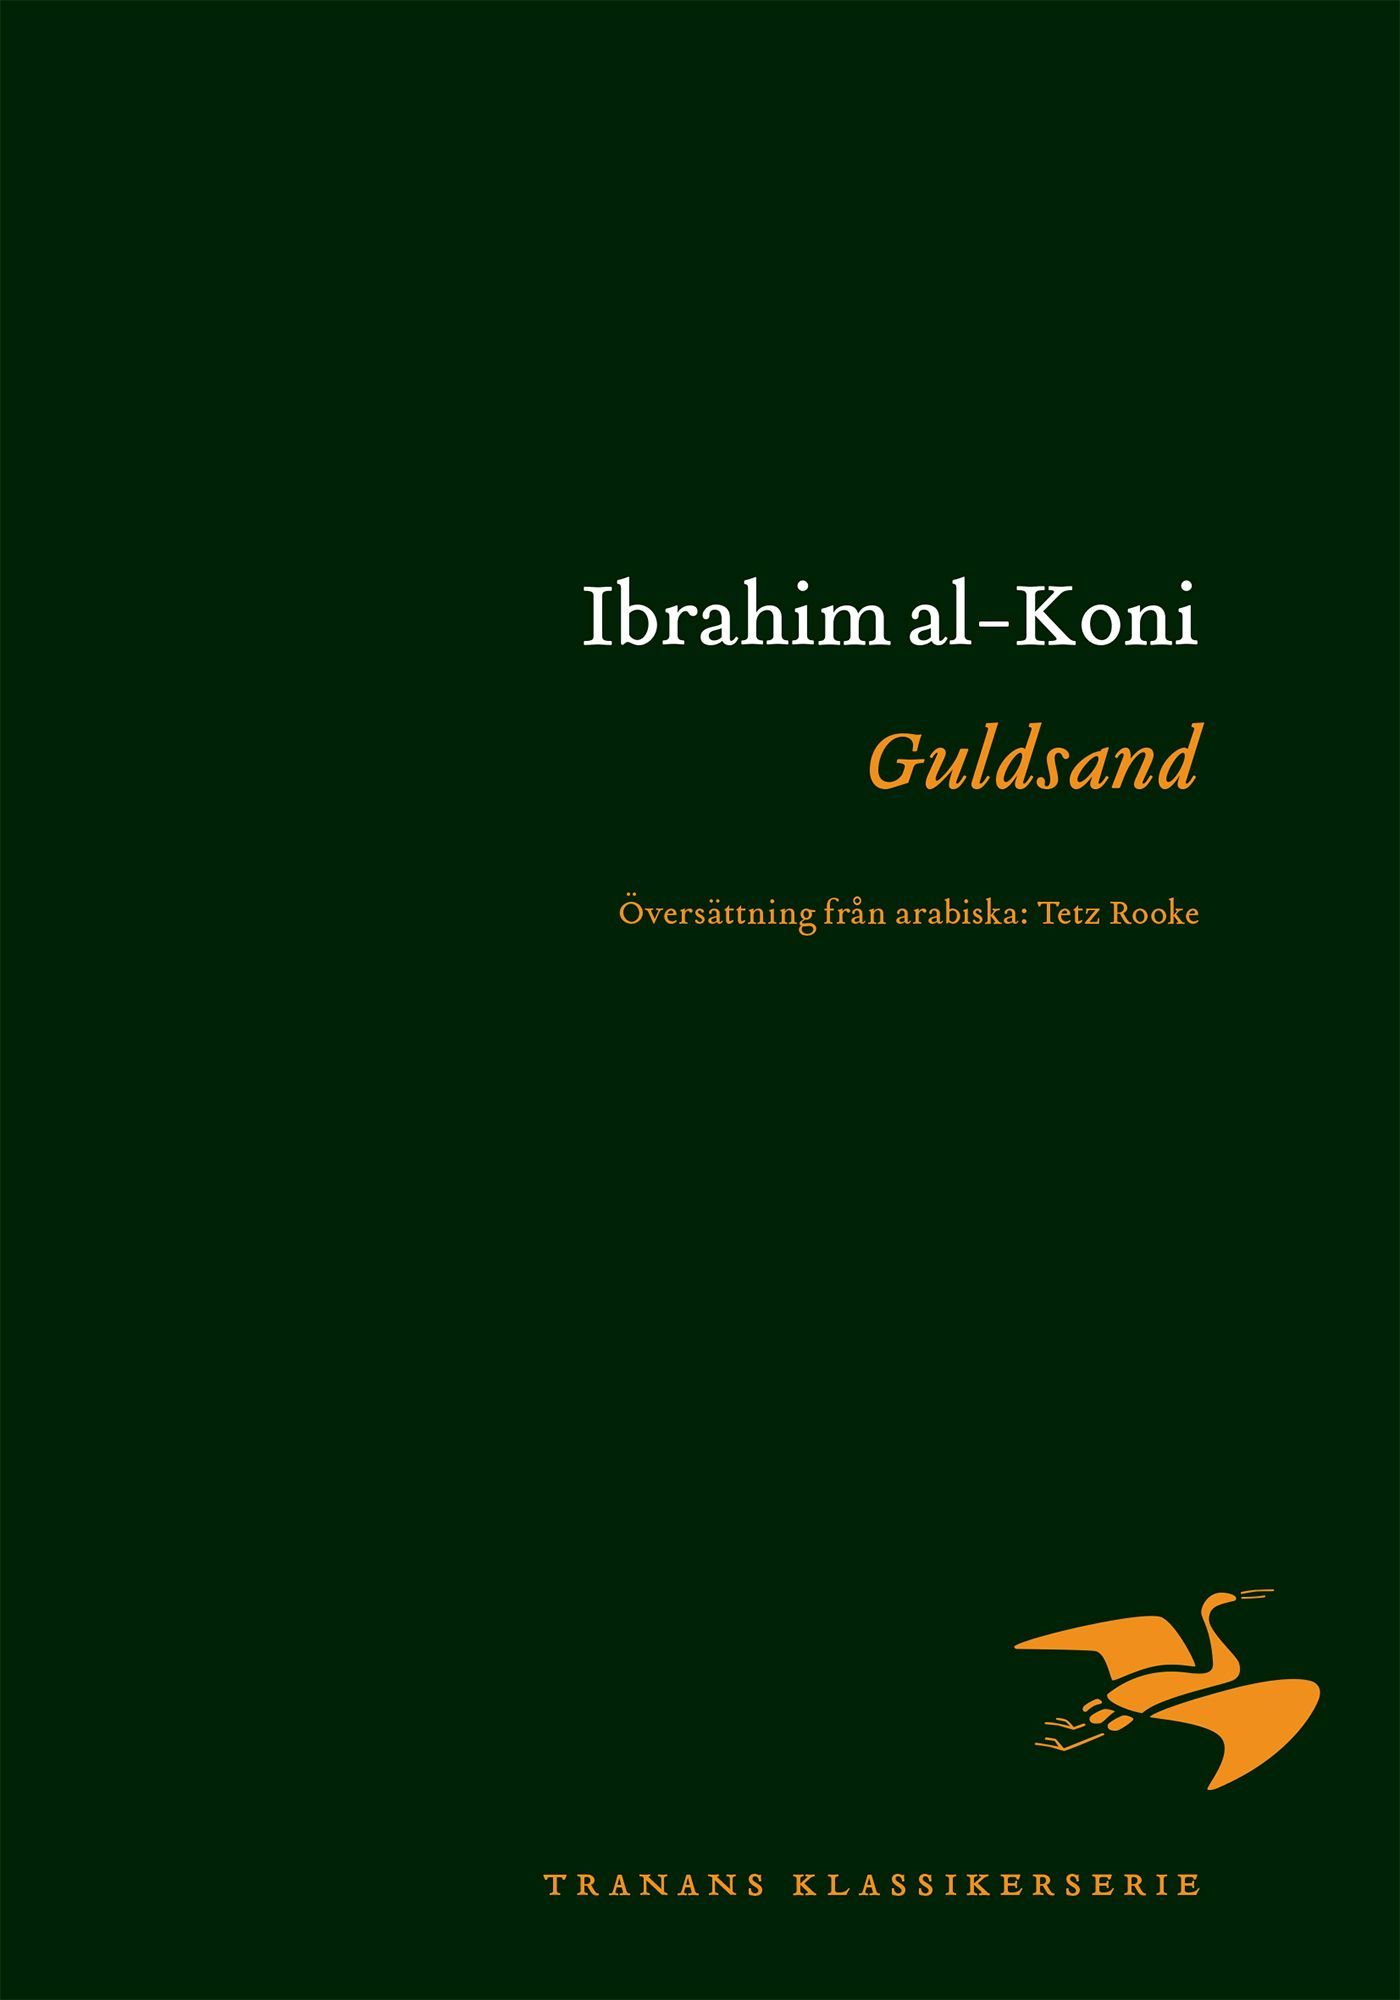 Guldsand, e-bok av Ibrahim al-Koni